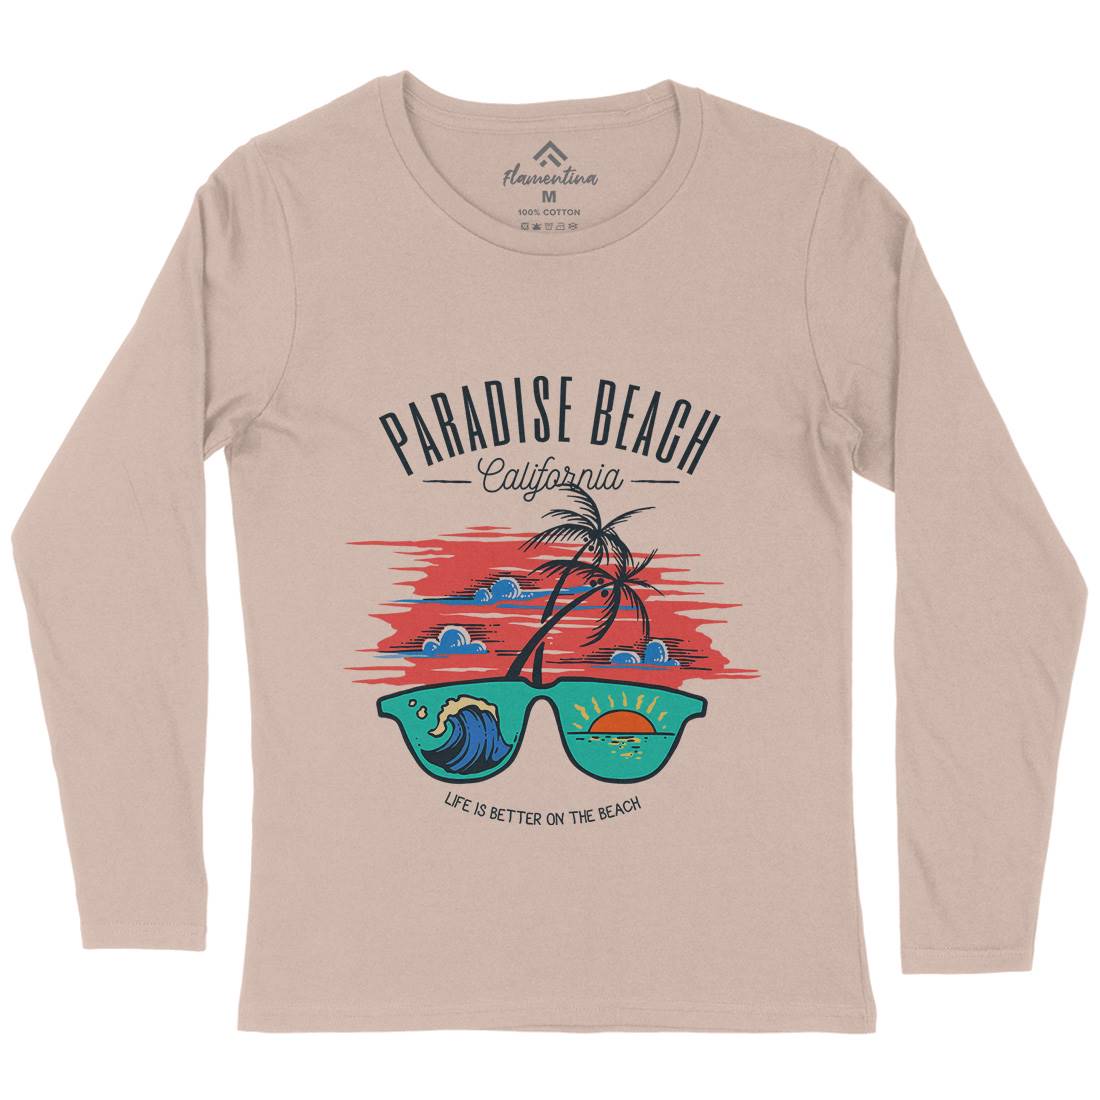 Sunglass Beach Womens Long Sleeve T-Shirt Holiday C780